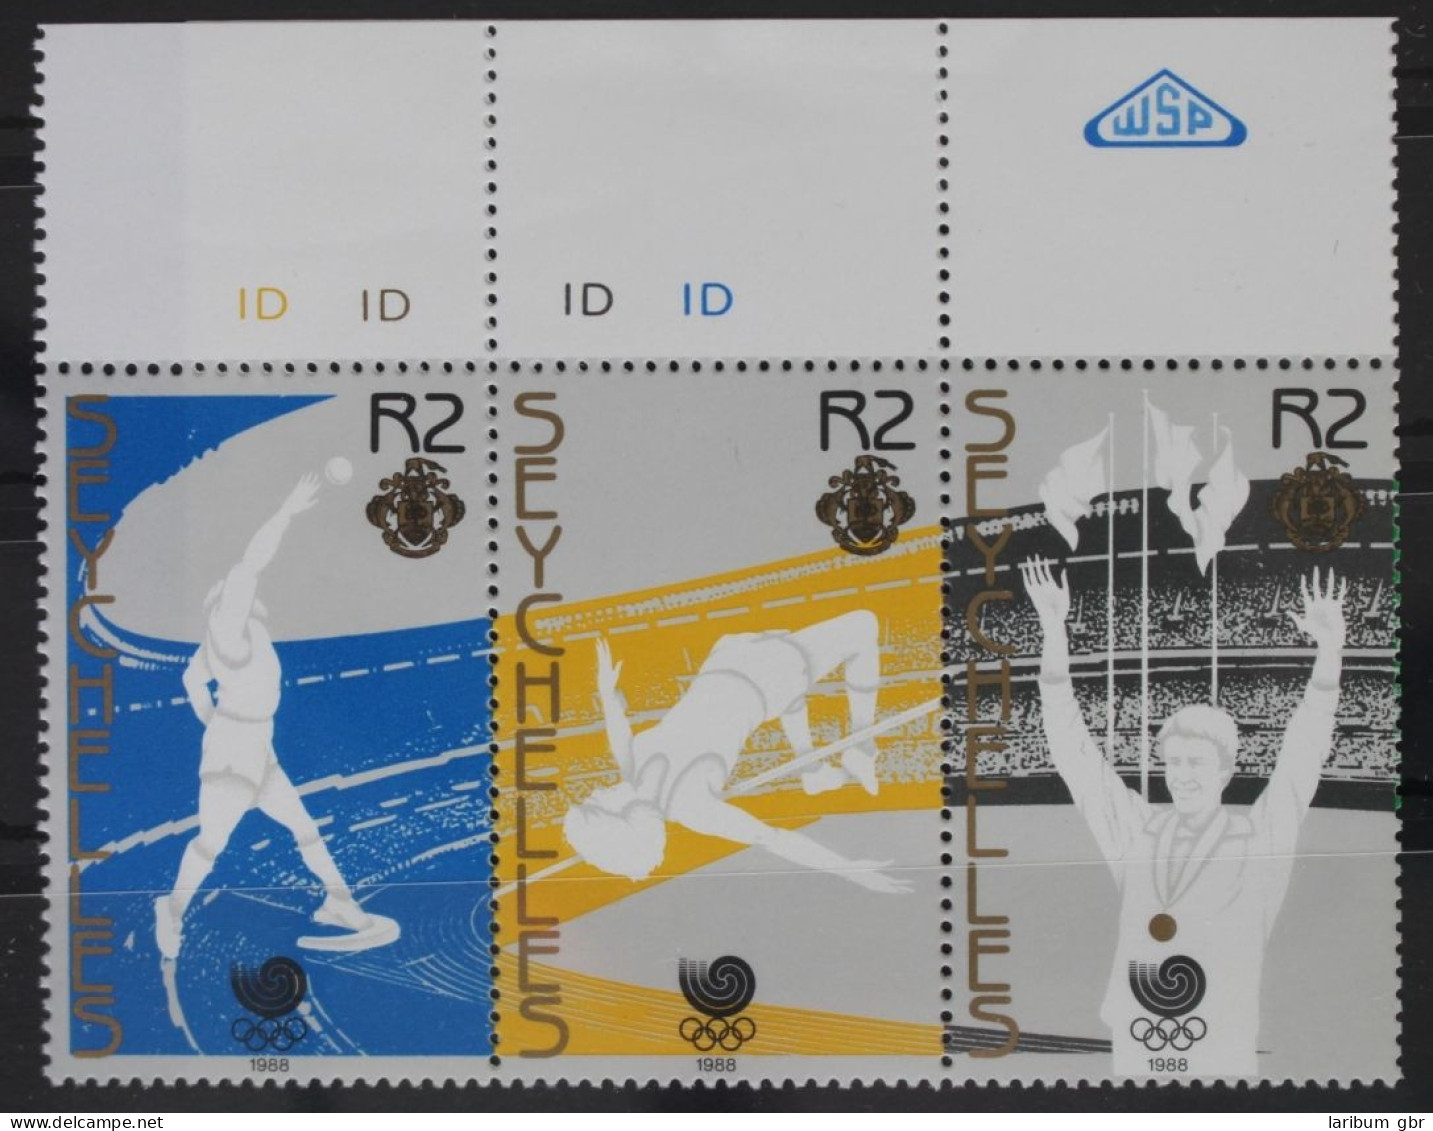 Seychellen 666-670 Postfrisch Fünferstreifen, Olympische Spiele #WW684 - Seychelles (1976-...)